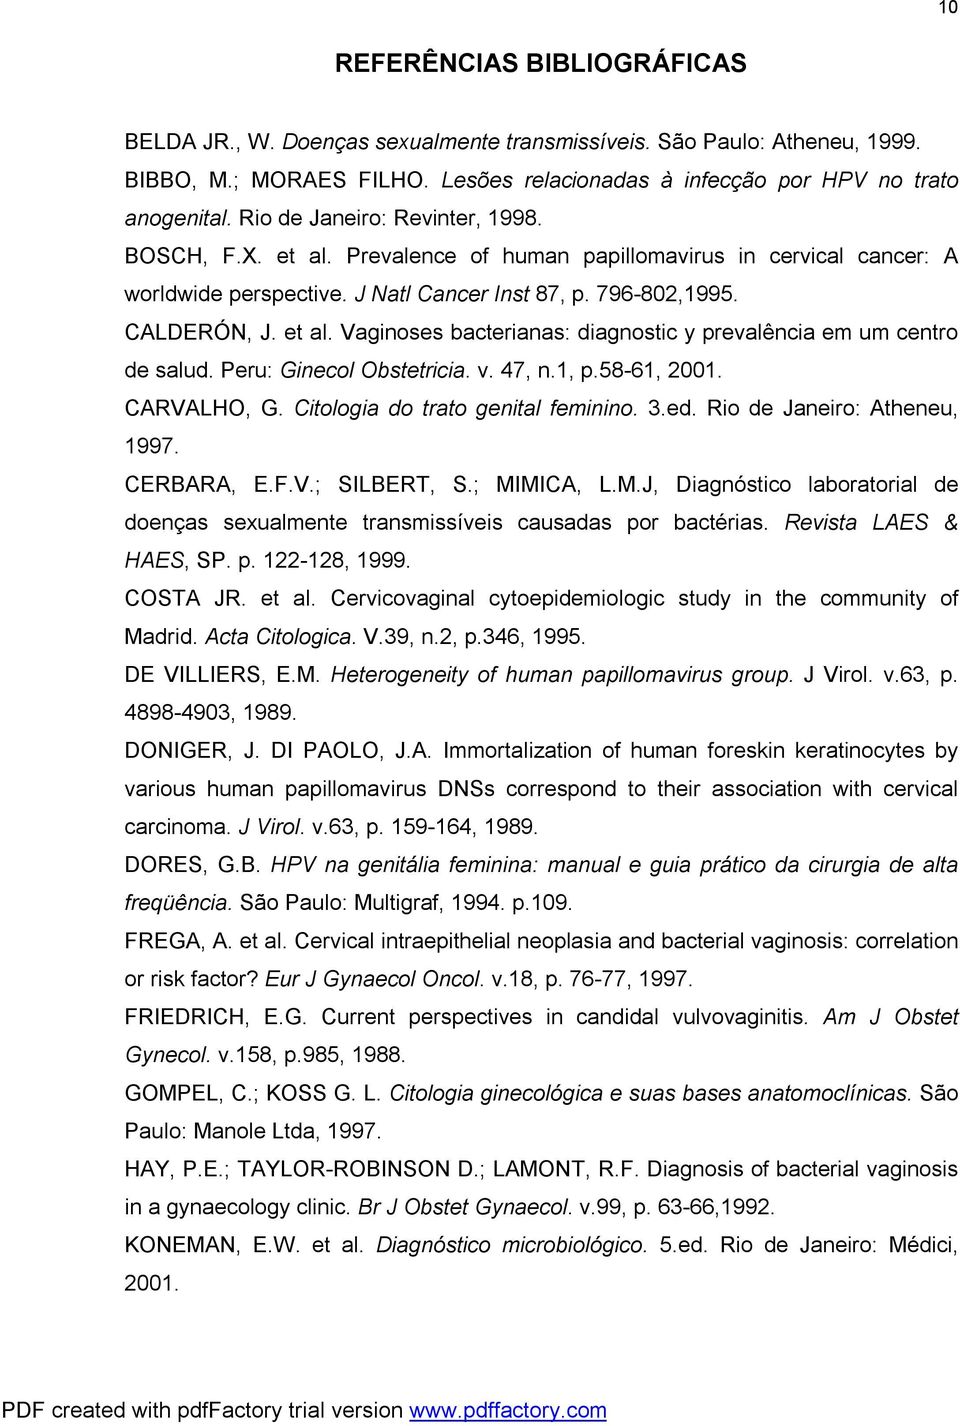 Peru: Ginecol Obstetricia. v. 47, n.1, p.58-61, 2001. CARVALHO, G. Citologia do trato genital feminino. 3.ed. Rio de Janeiro: Atheneu, 1997. CERBARA, E.F.V.; SILBERT, S.; MI